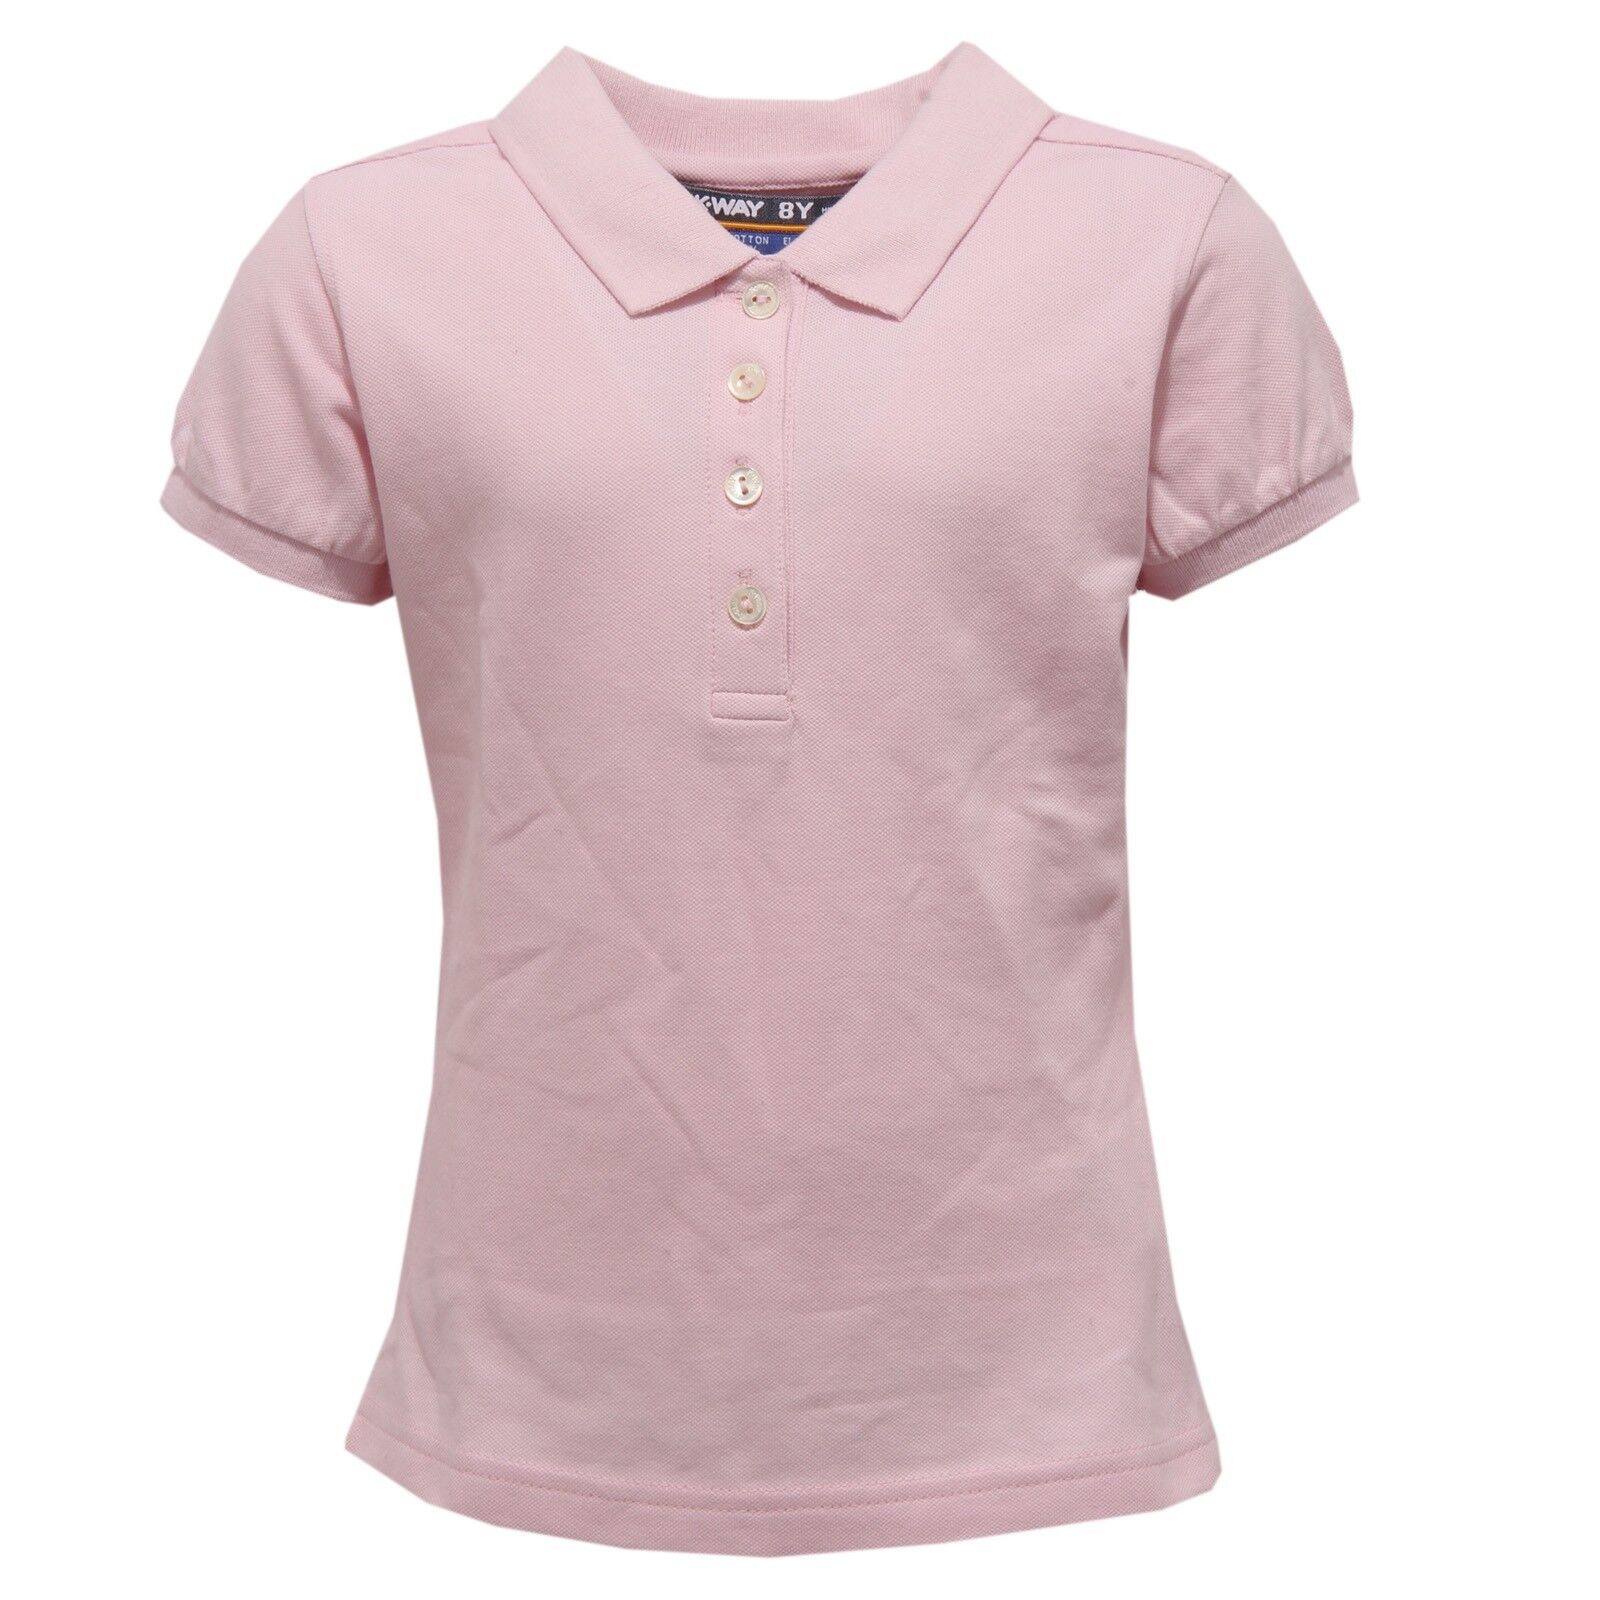 8507W polo bimba K-WAY SLIM FIT maglia girl polo t-shirt pink Nowe tanie